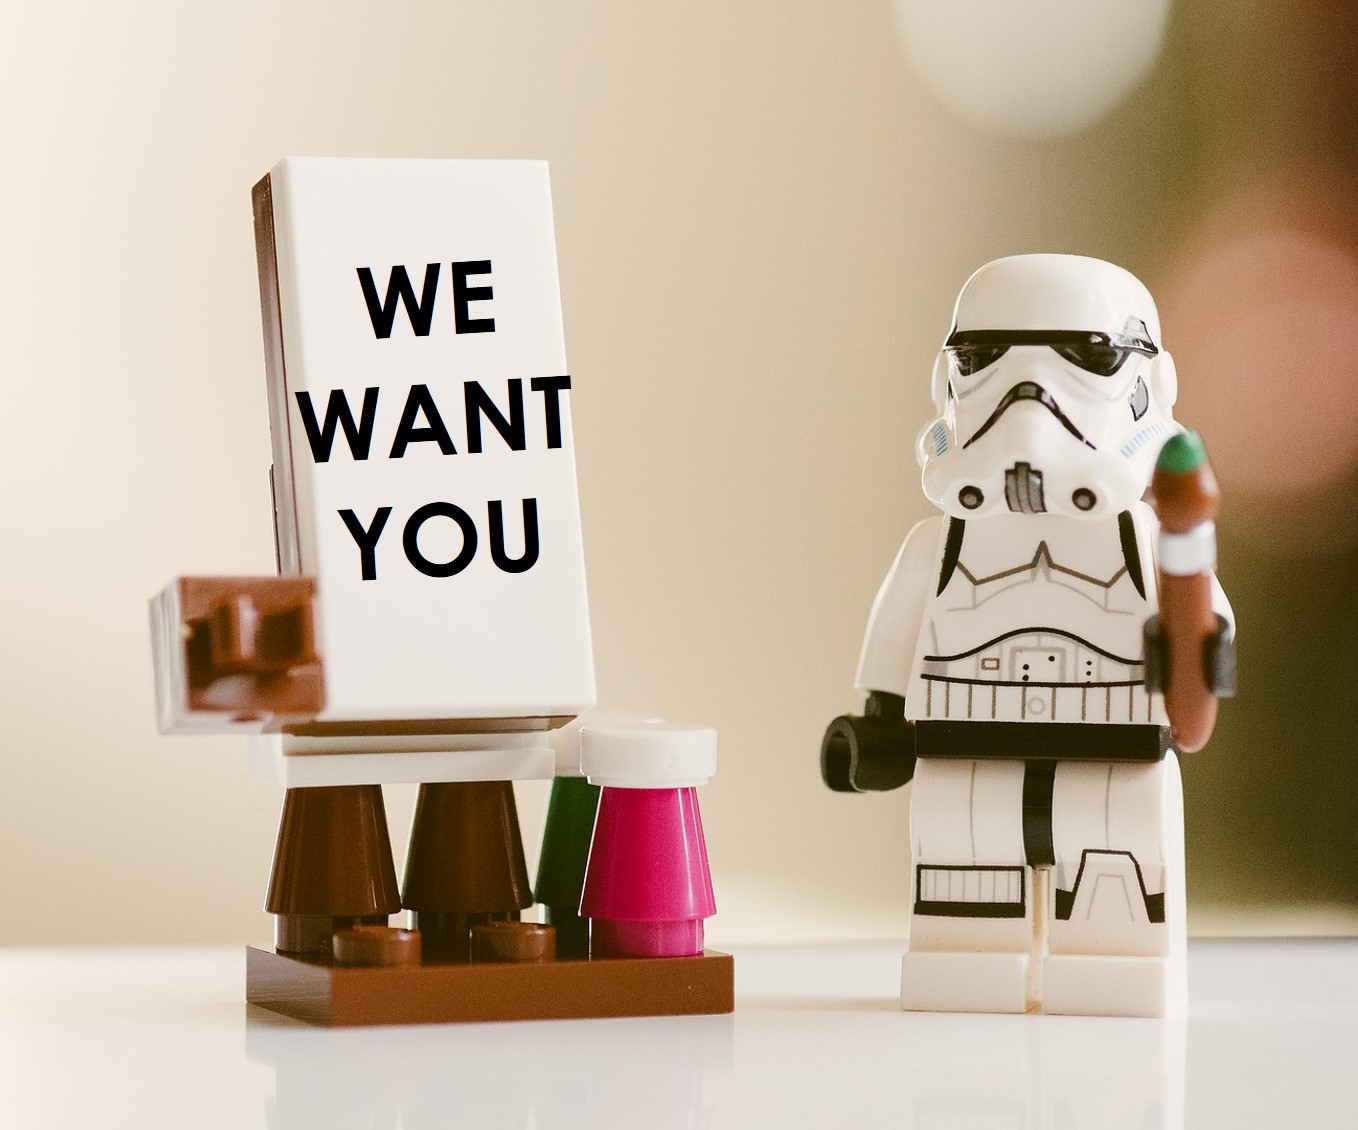 Star Wars Lego-Figur mit Schild "We want you"